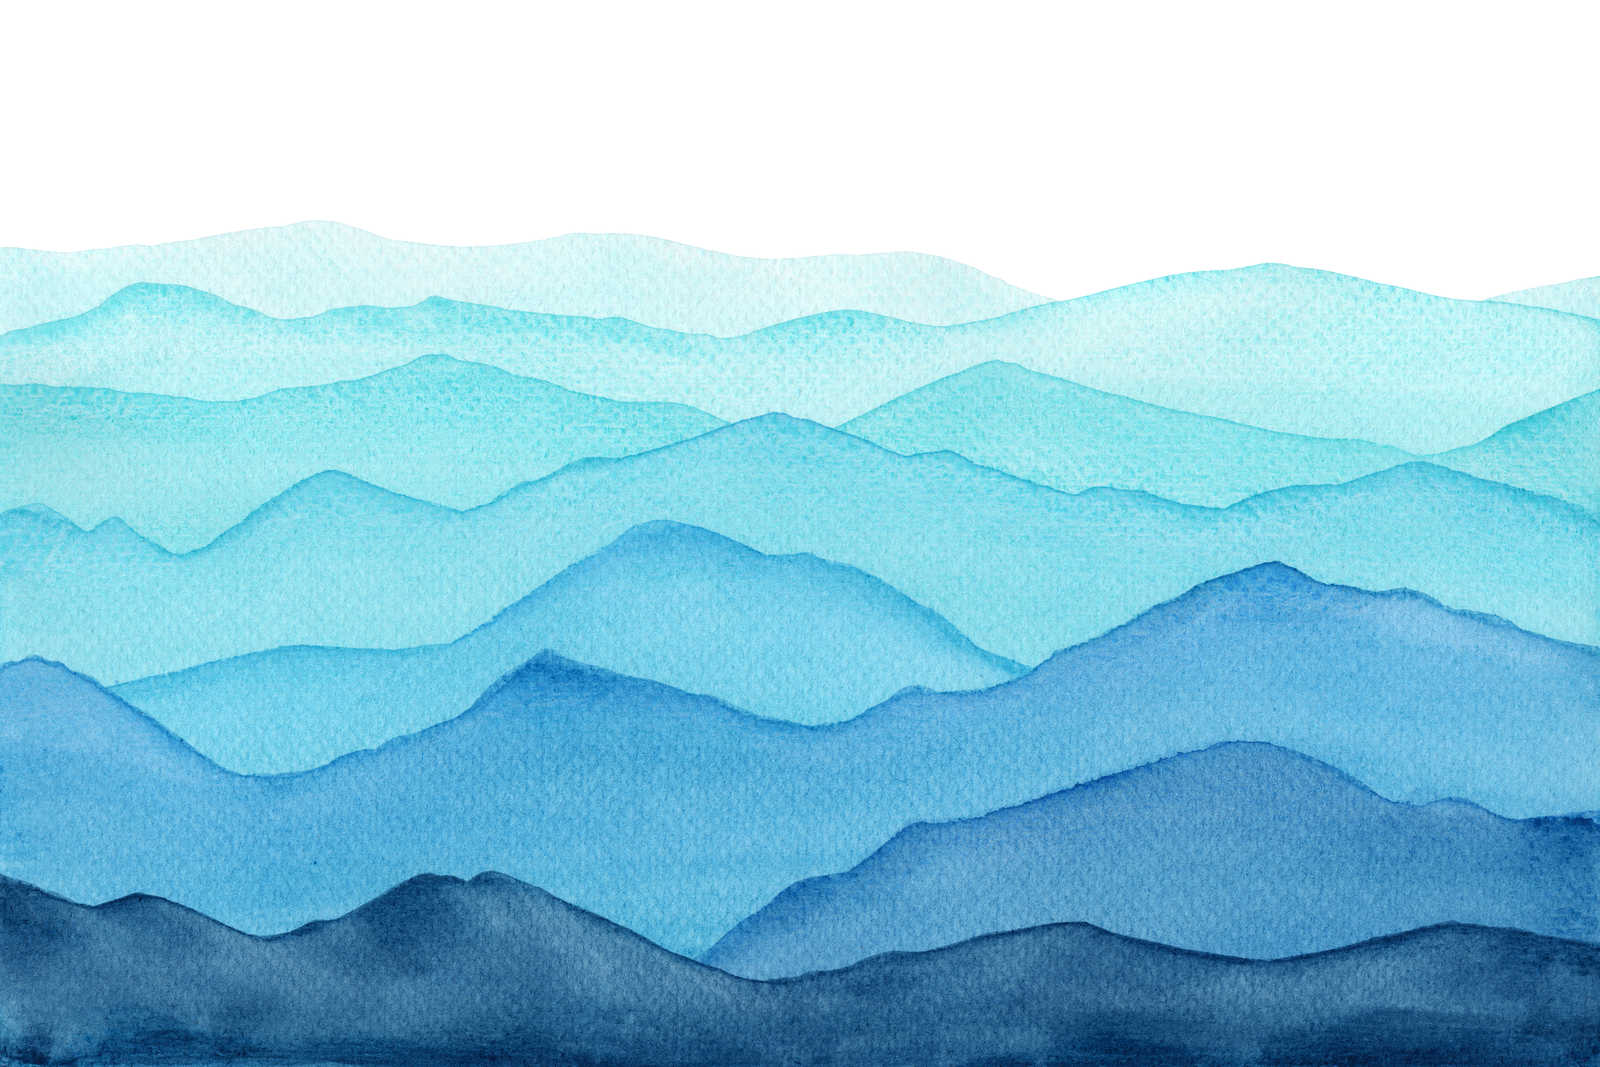             Leinwand Meer mit Wellen in aquarell – 120 cm x 80 cm
        